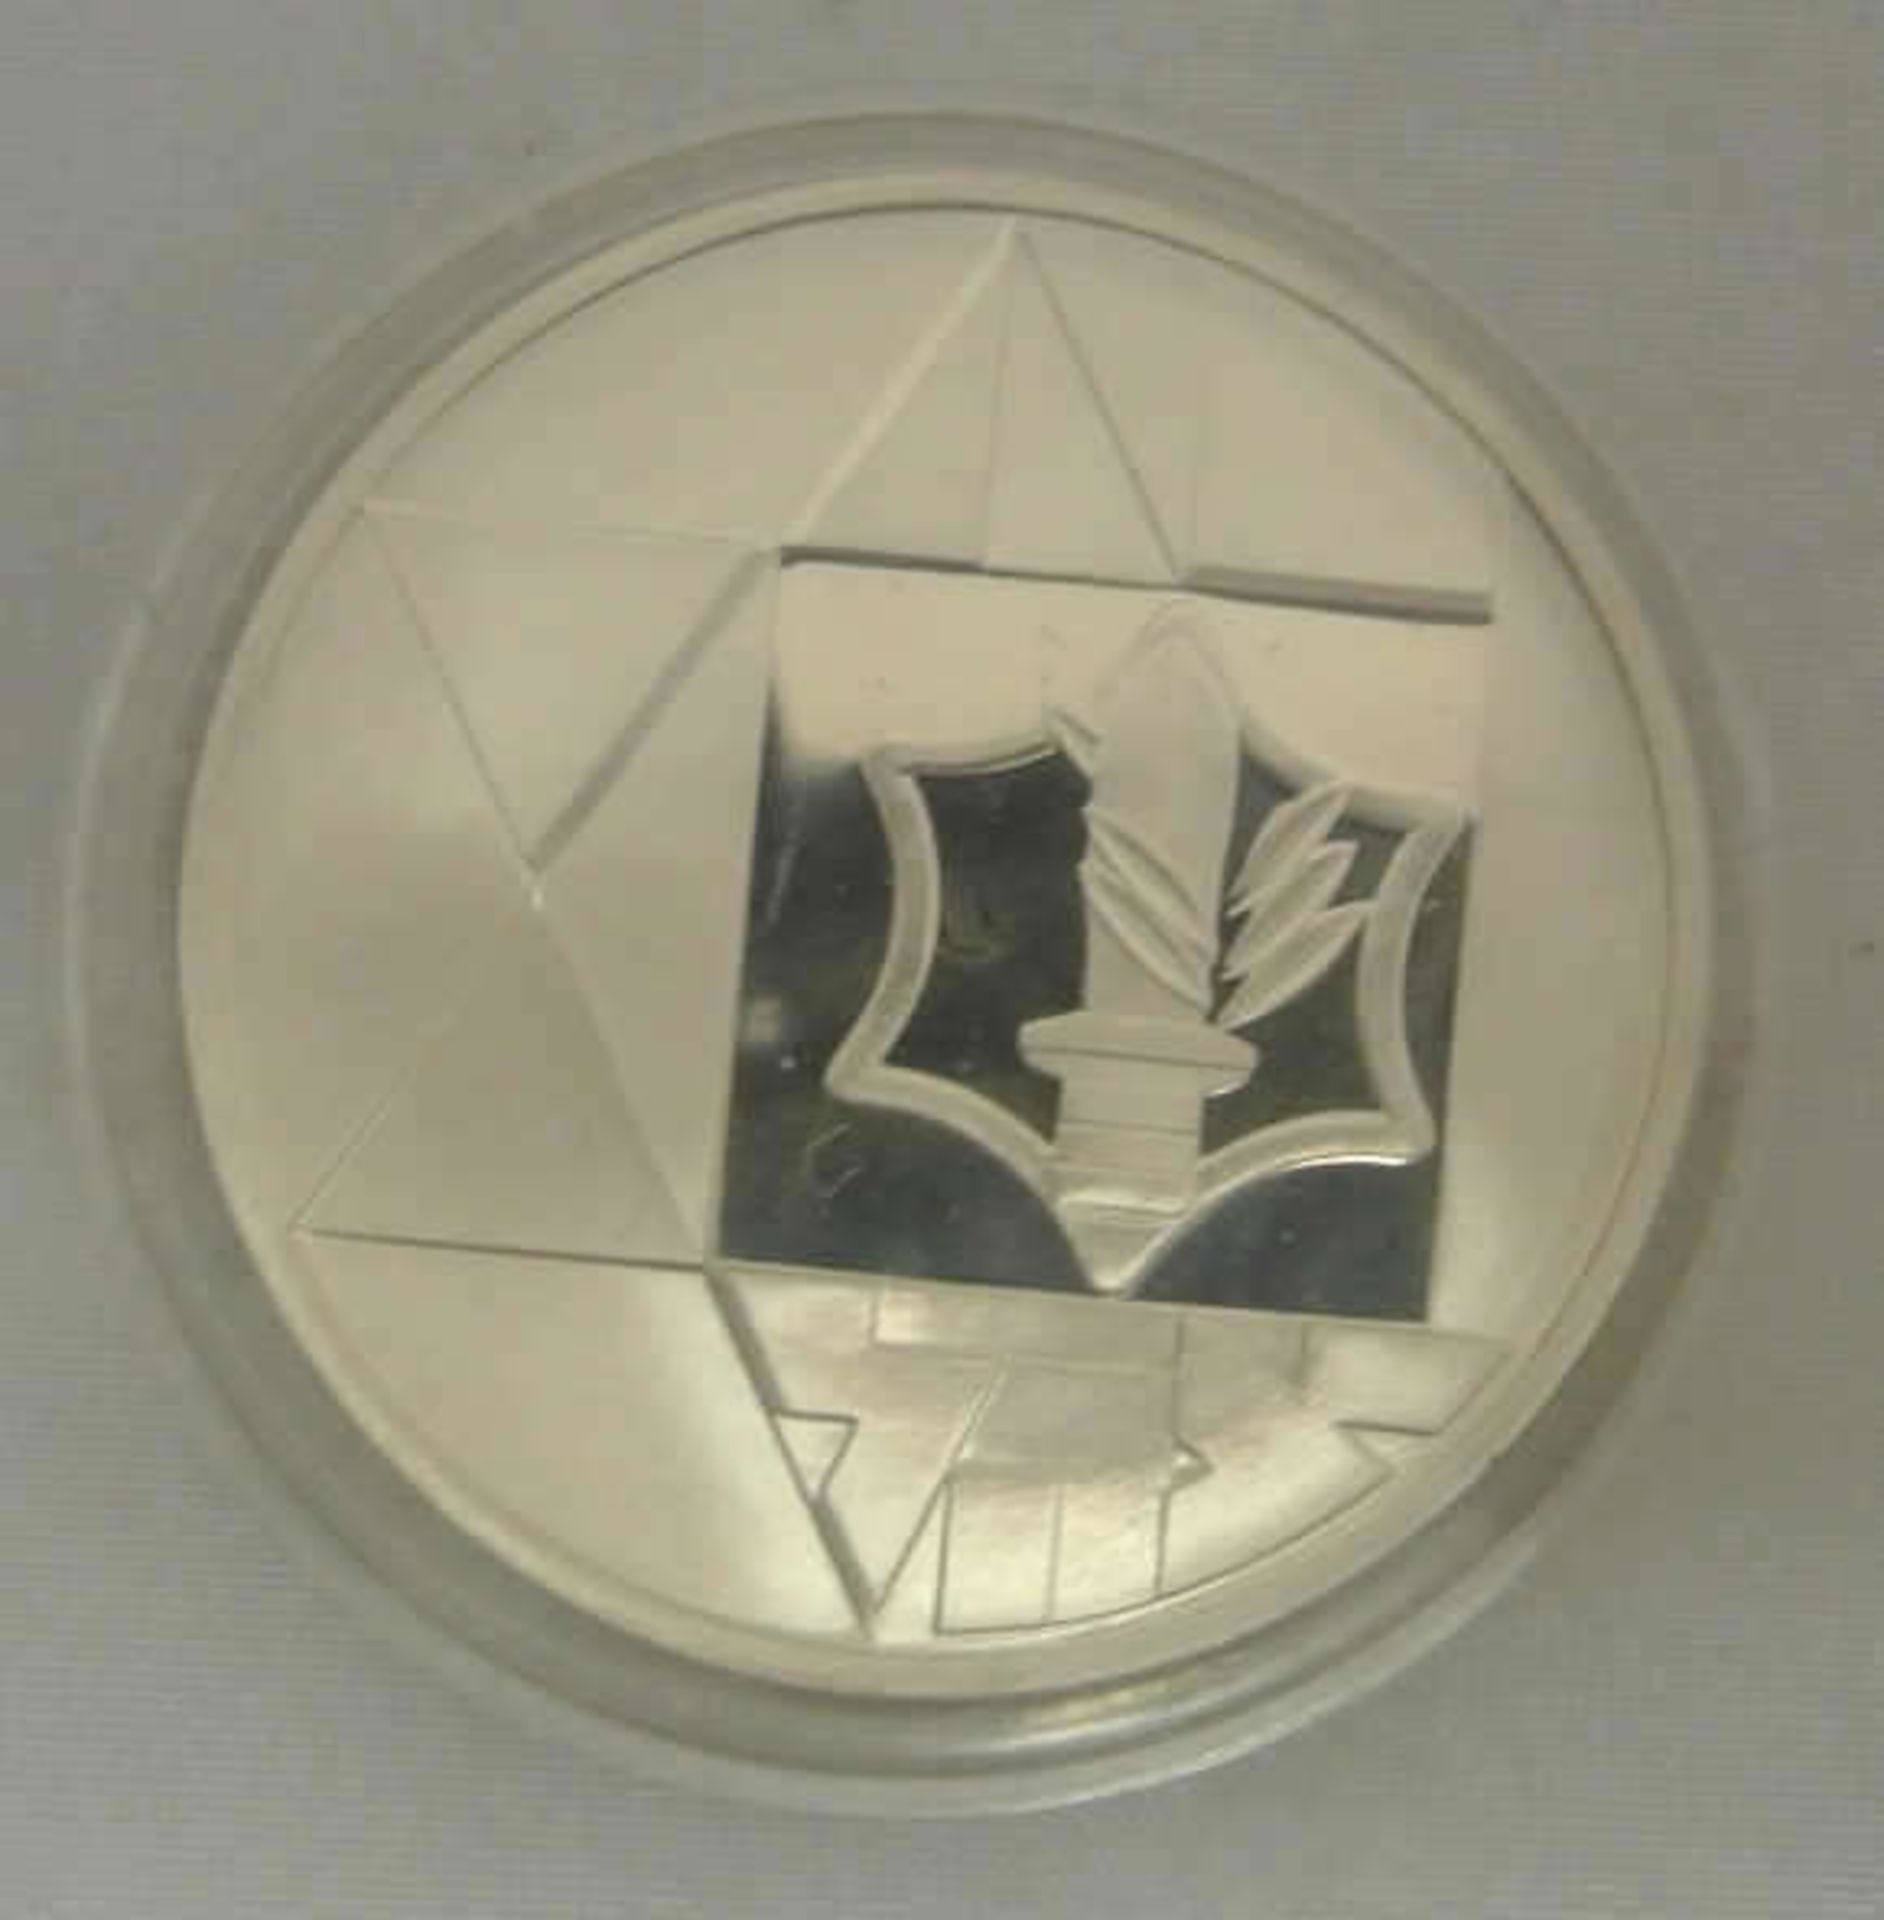 Israel, Silbermünze, 2 Sheqalim 1983, Proof Coin. In Original Box mit Garantiekarte. - Bild 2 aus 2